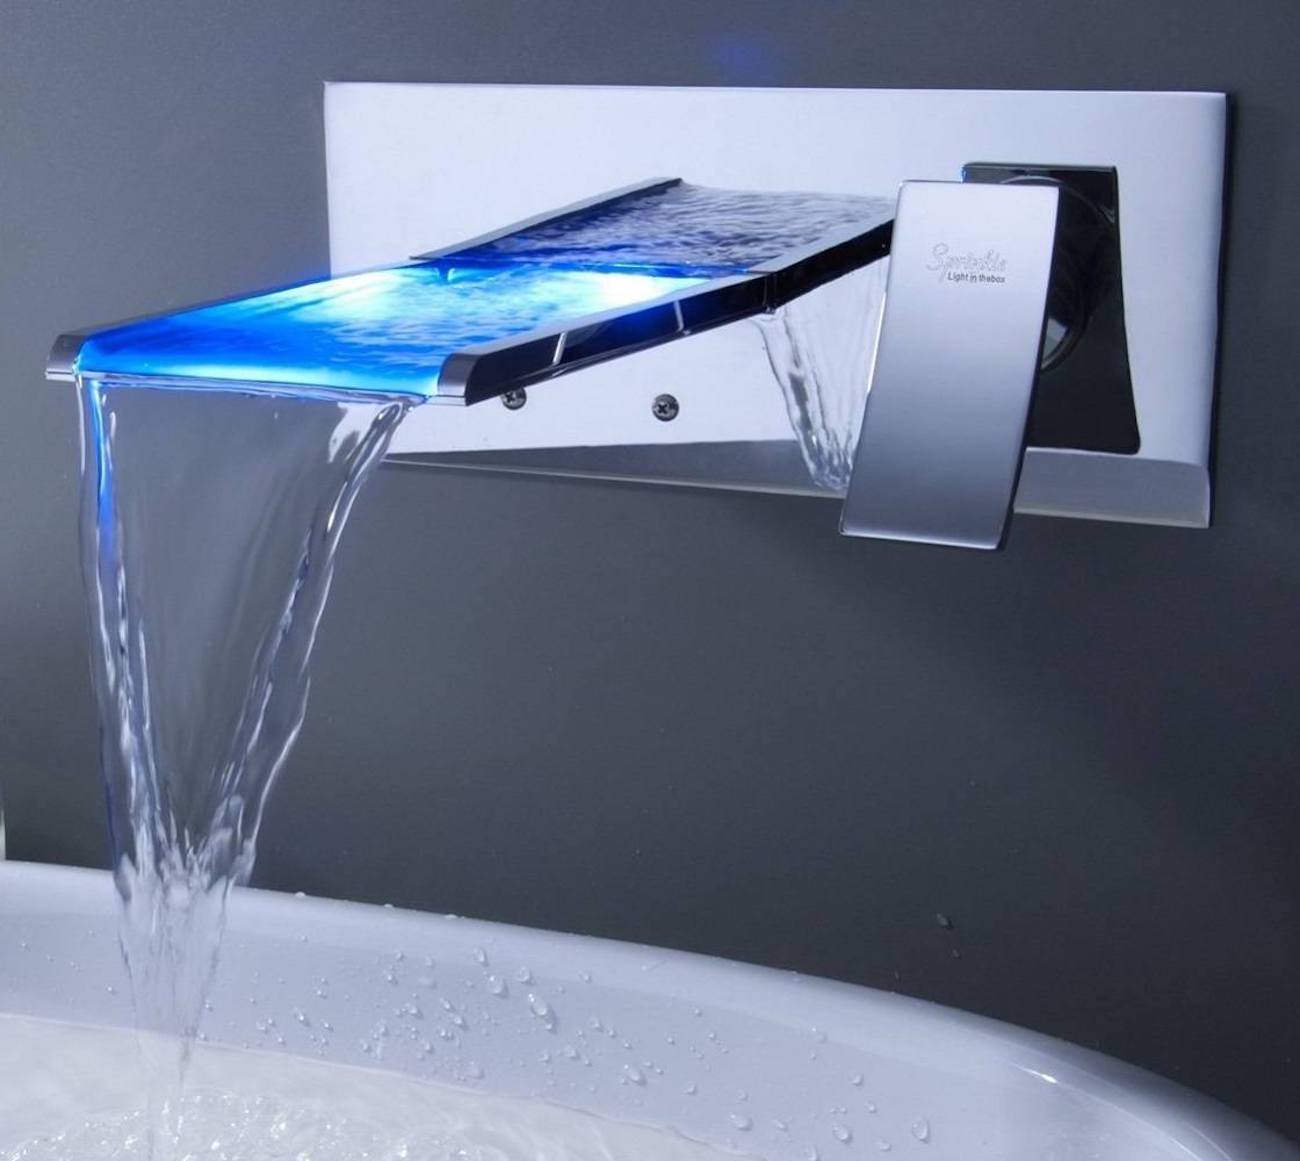 Waterfall Bathroom Sink Faucet Gadget Flow